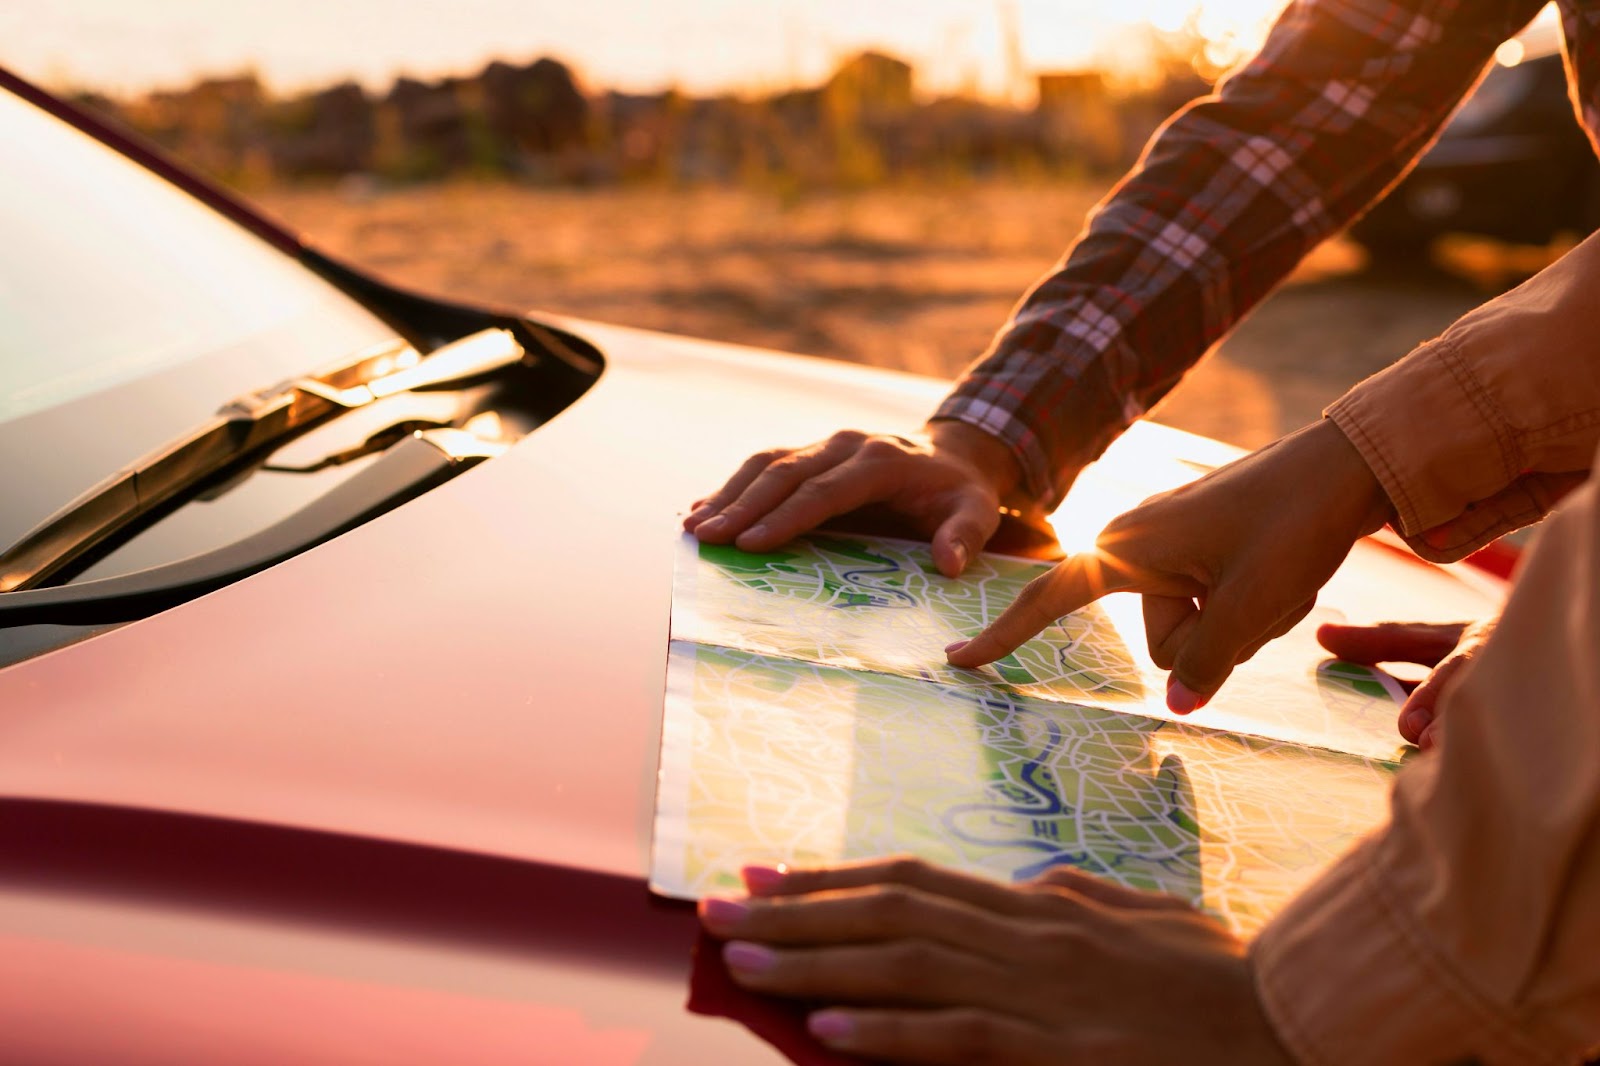 Imagem em close-up retrata duas pessoas apoiando um mapa sobre o capô de um veículo vermelho ao entardecer, planejando o itinerário de sua viagem de carro.